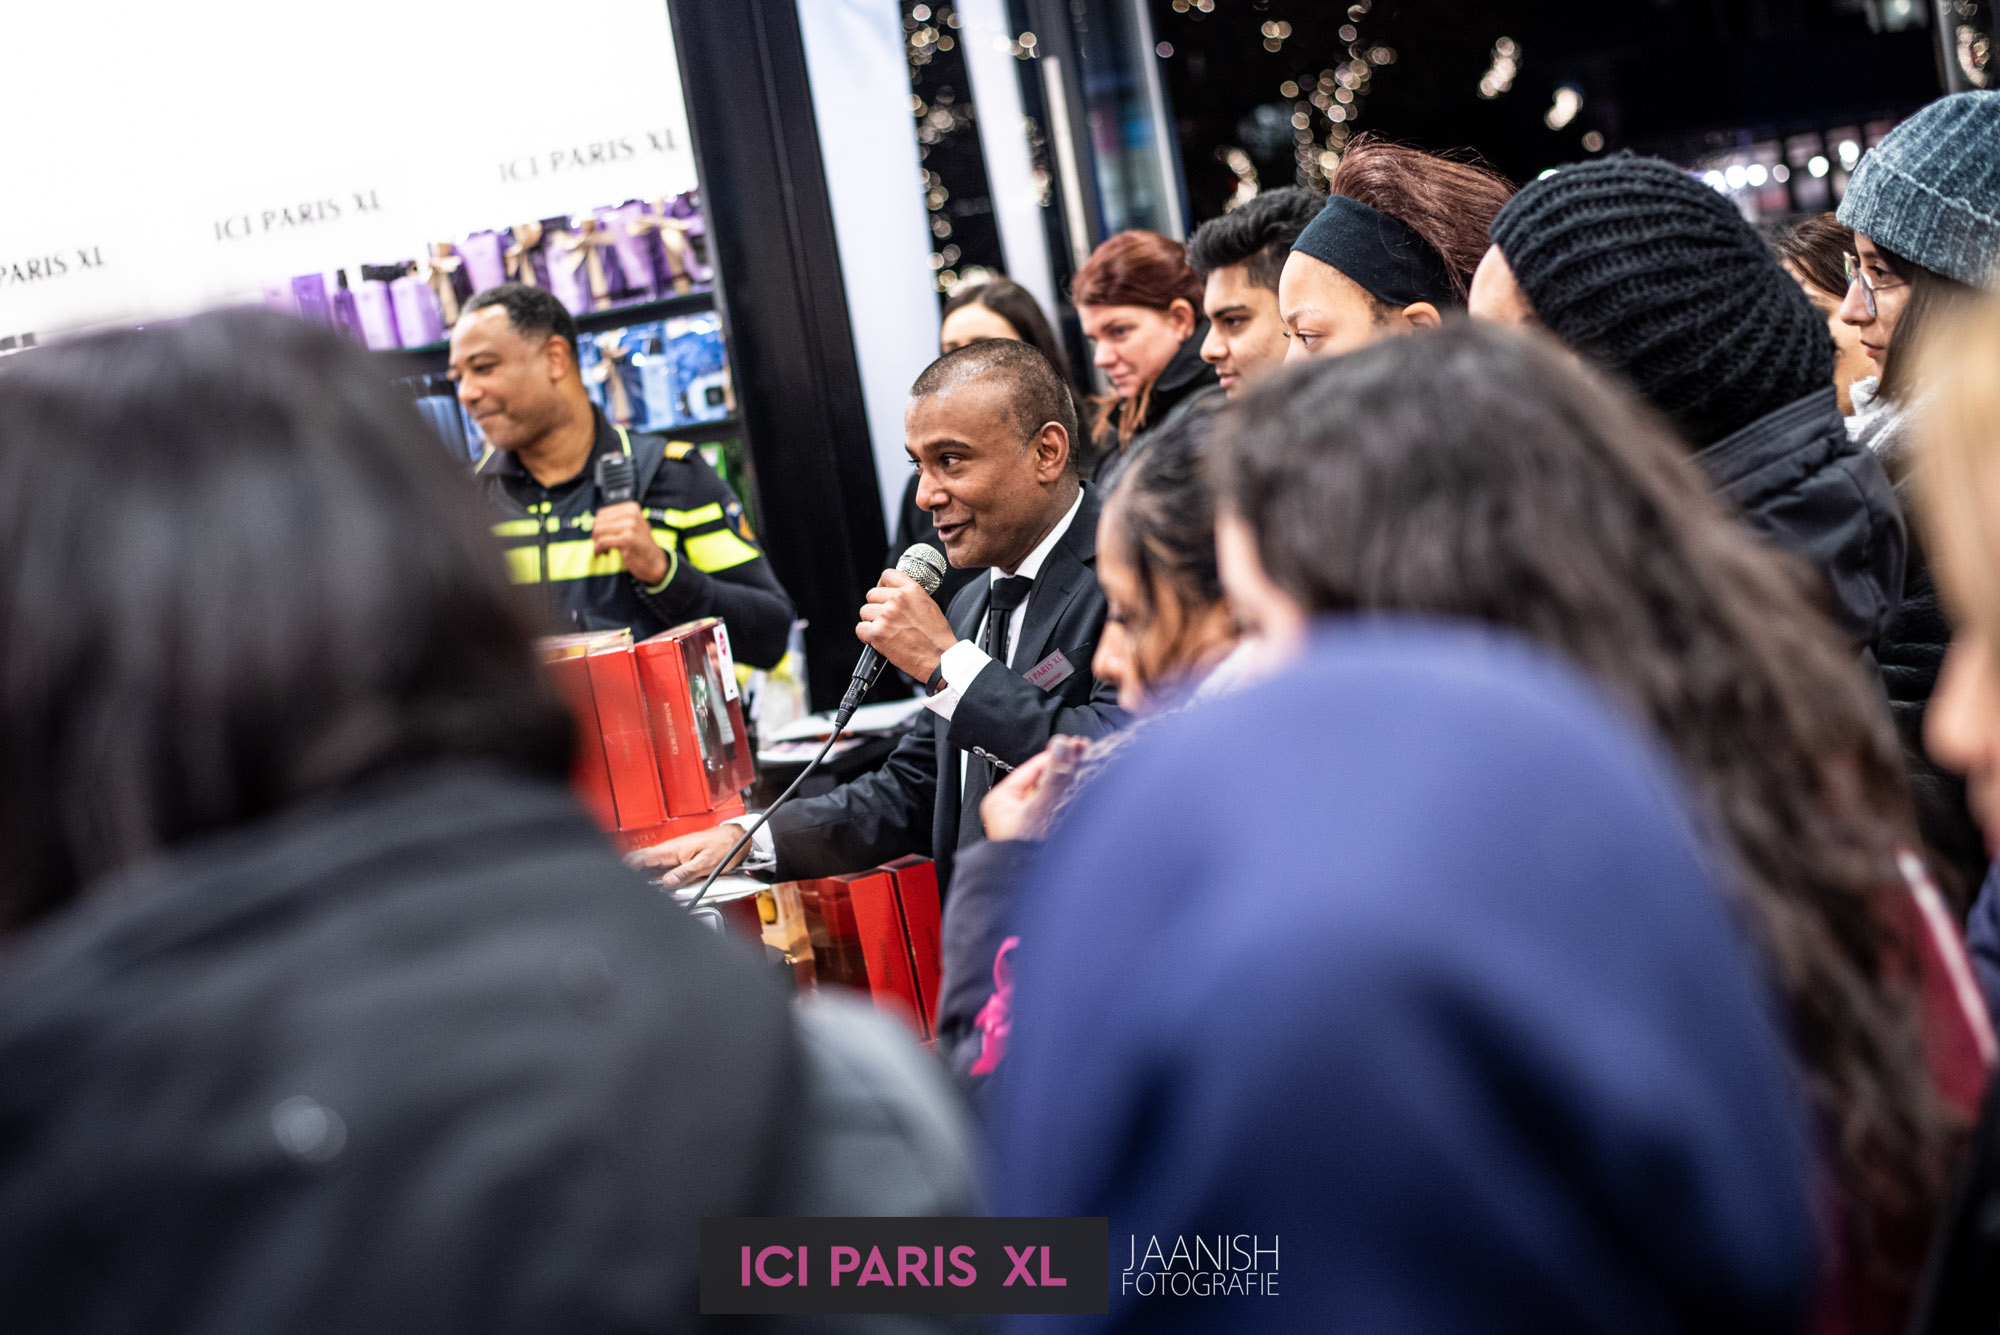 ICI Paris bedrijfsfeest evenement fotograaf in den haag 21